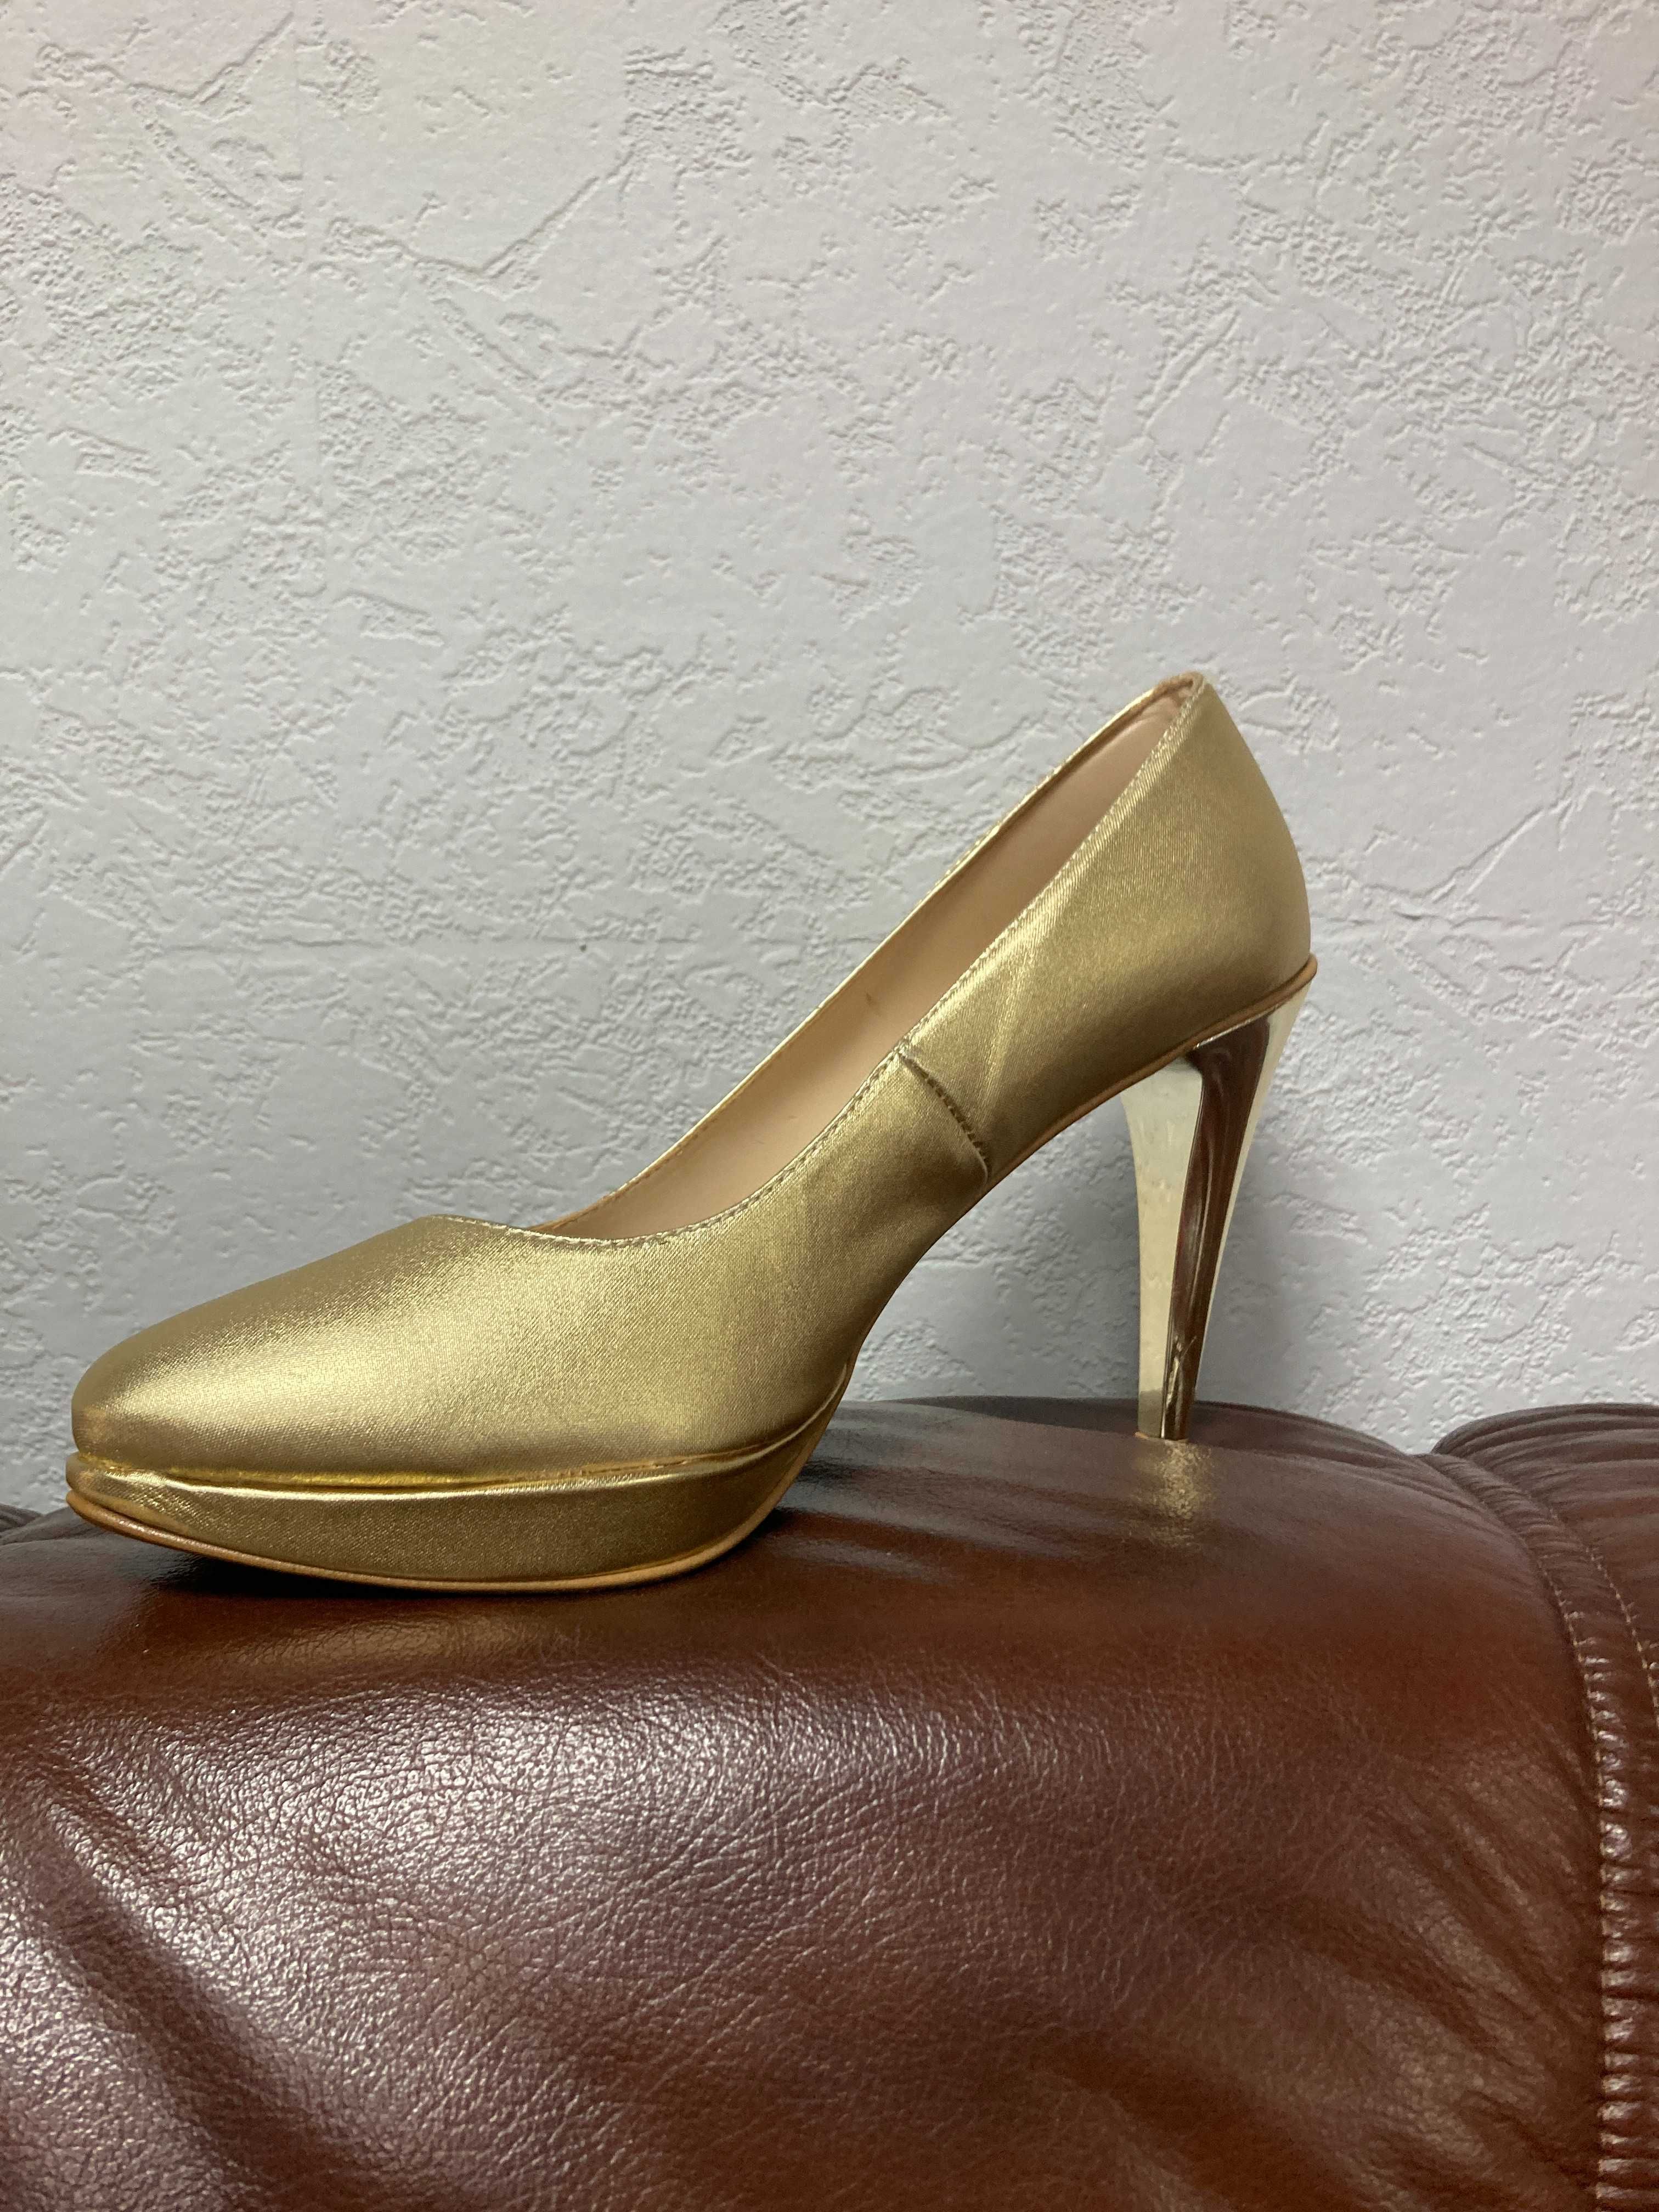 Nowe buty, czółenka złote, obcas lustro, r. 40, wys. 10 cm, wyprzedaż